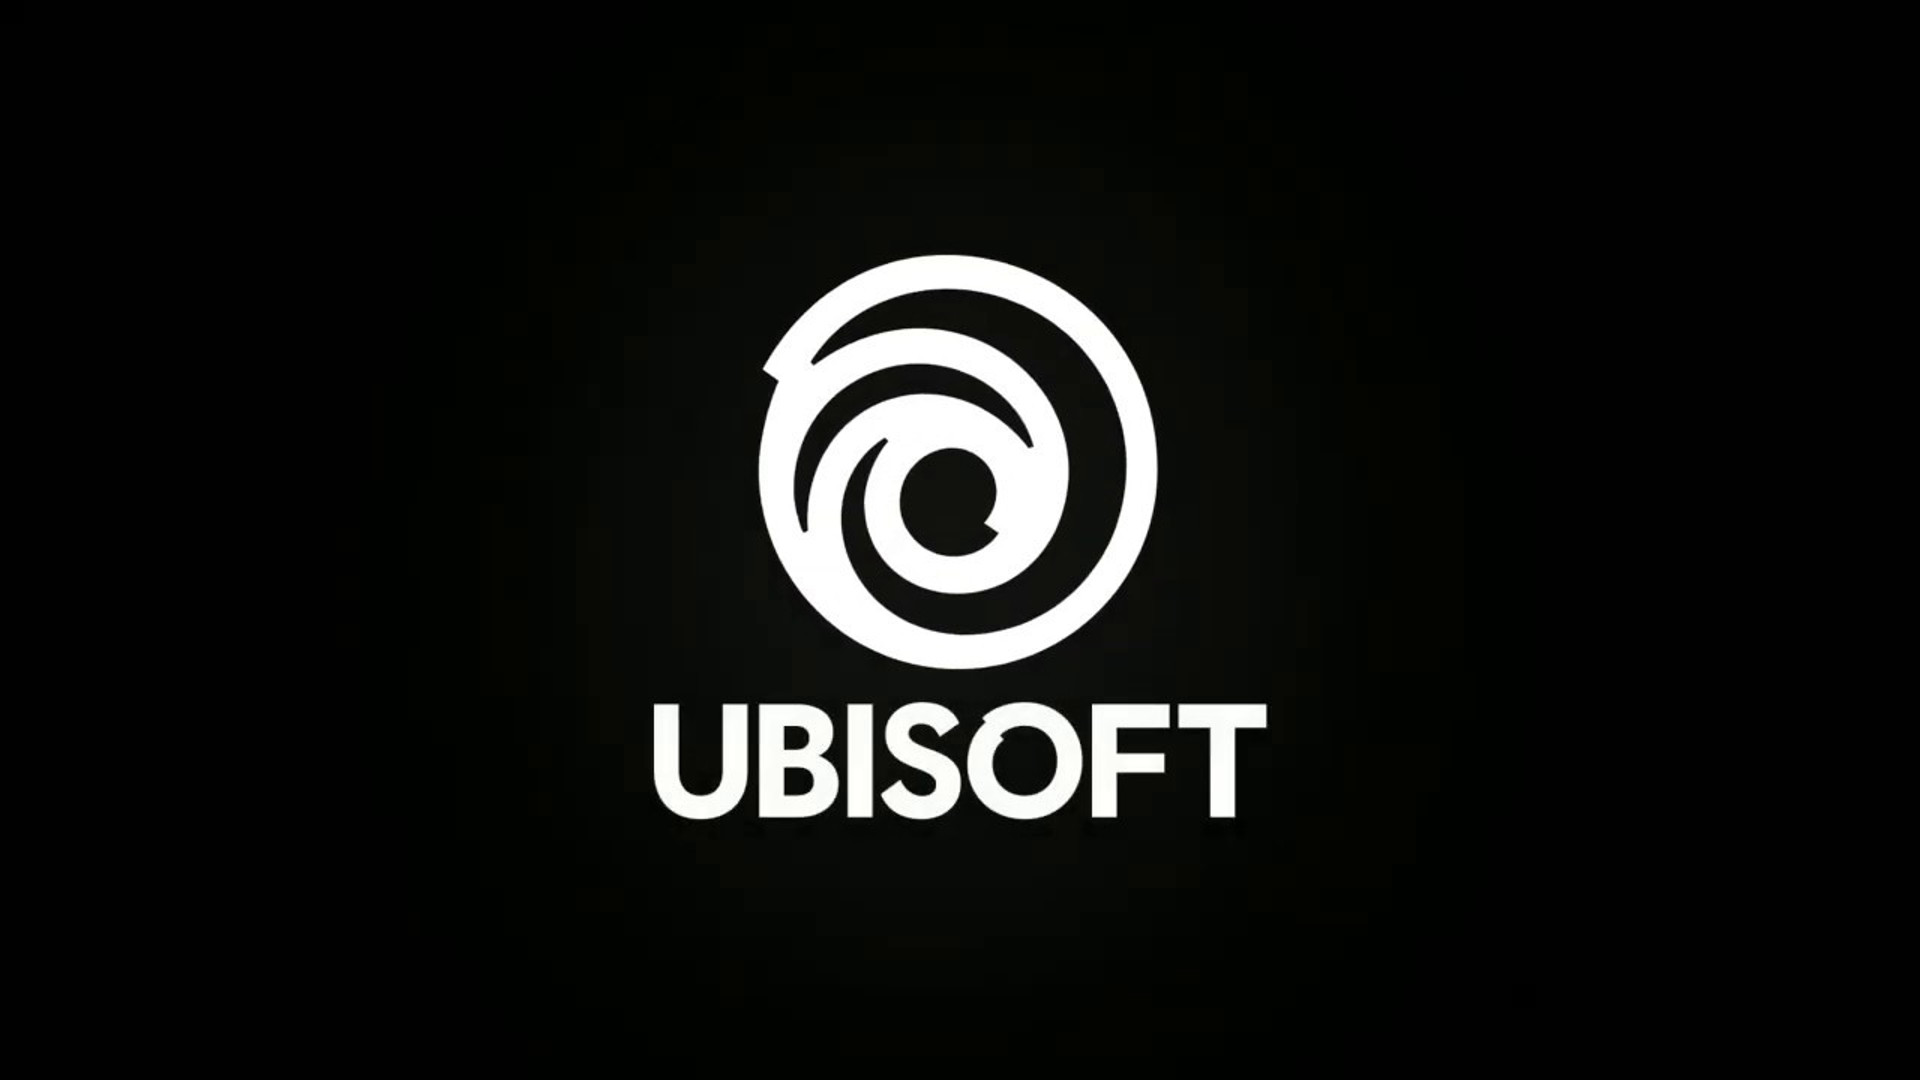 Ubisoft ਕਰਮਚਾਰੀਆਂ ਨੇ ਪ੍ਰਬੰਧਨ ਨੂੰ "ਸਾਡੀਆਂ ਮੰਗਾਂ ਨੂੰ ਸਹੀ ਢੰਗ ਨਾਲ ਮੰਨਣ" ਲਈ ਕਿਹਾ